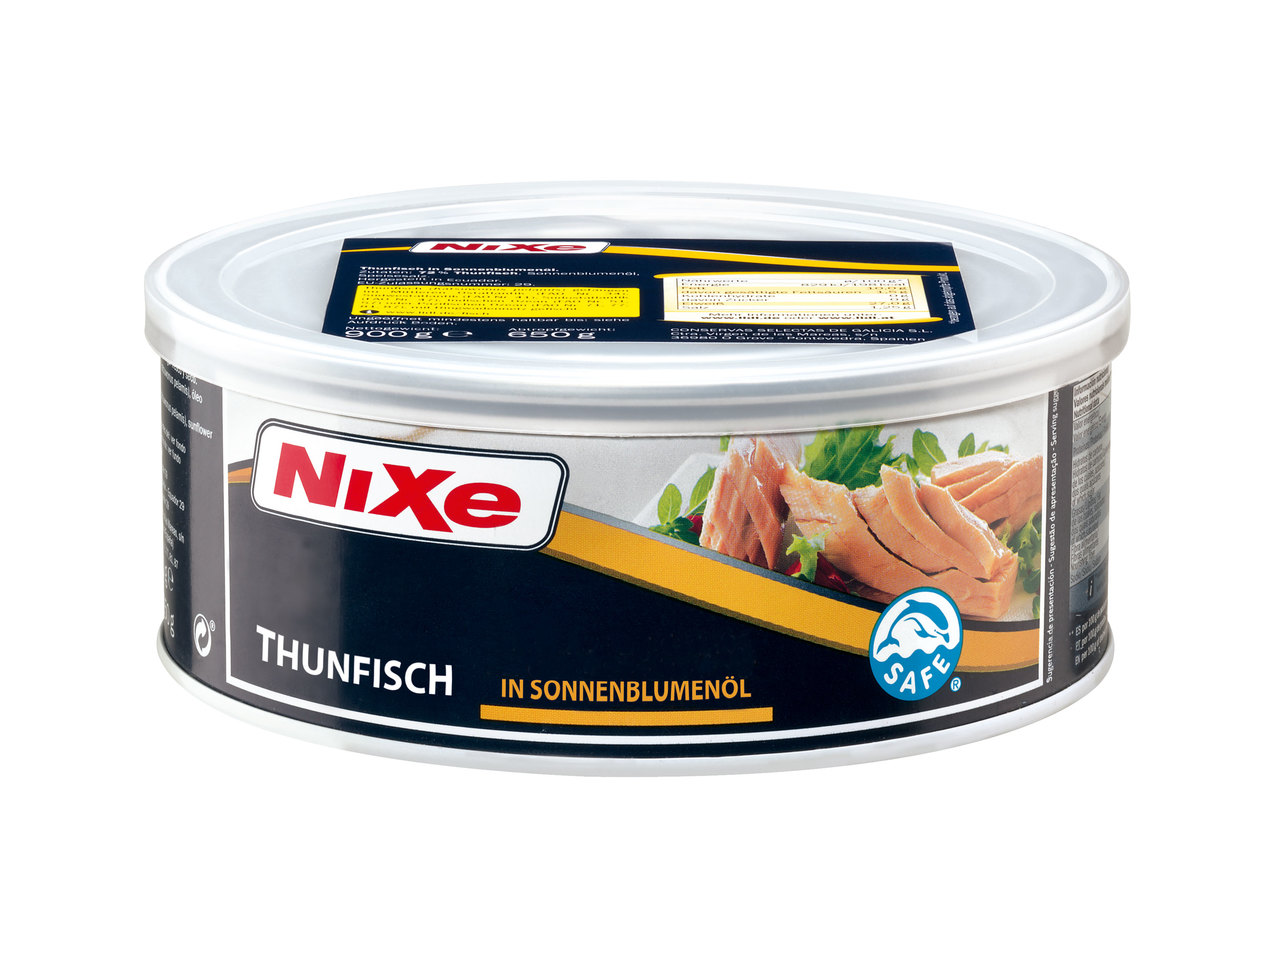 NIXE Thunfisch in Sonnenblumenöl 900 g